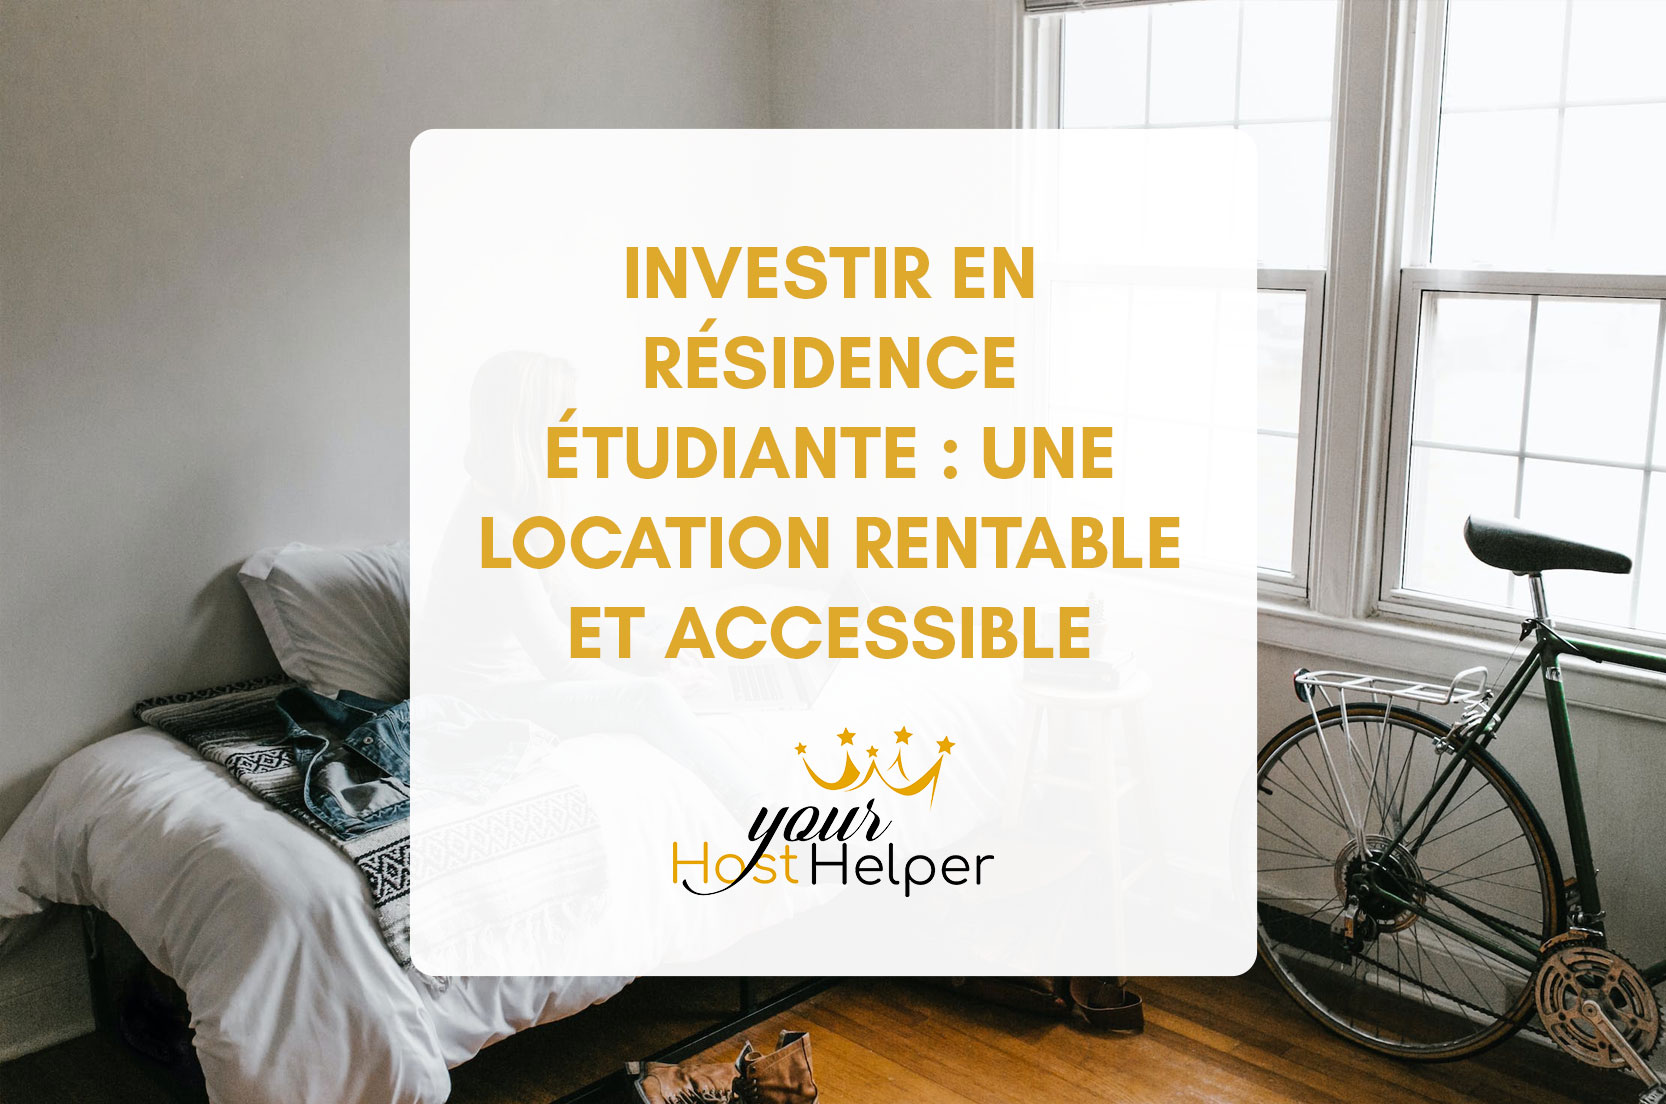 Вы сейчас просматриваете Инвестиции в студенческое общежитие: выгодная и доступная аренда, рассказанная вашим консьержем в Ла-Рошели